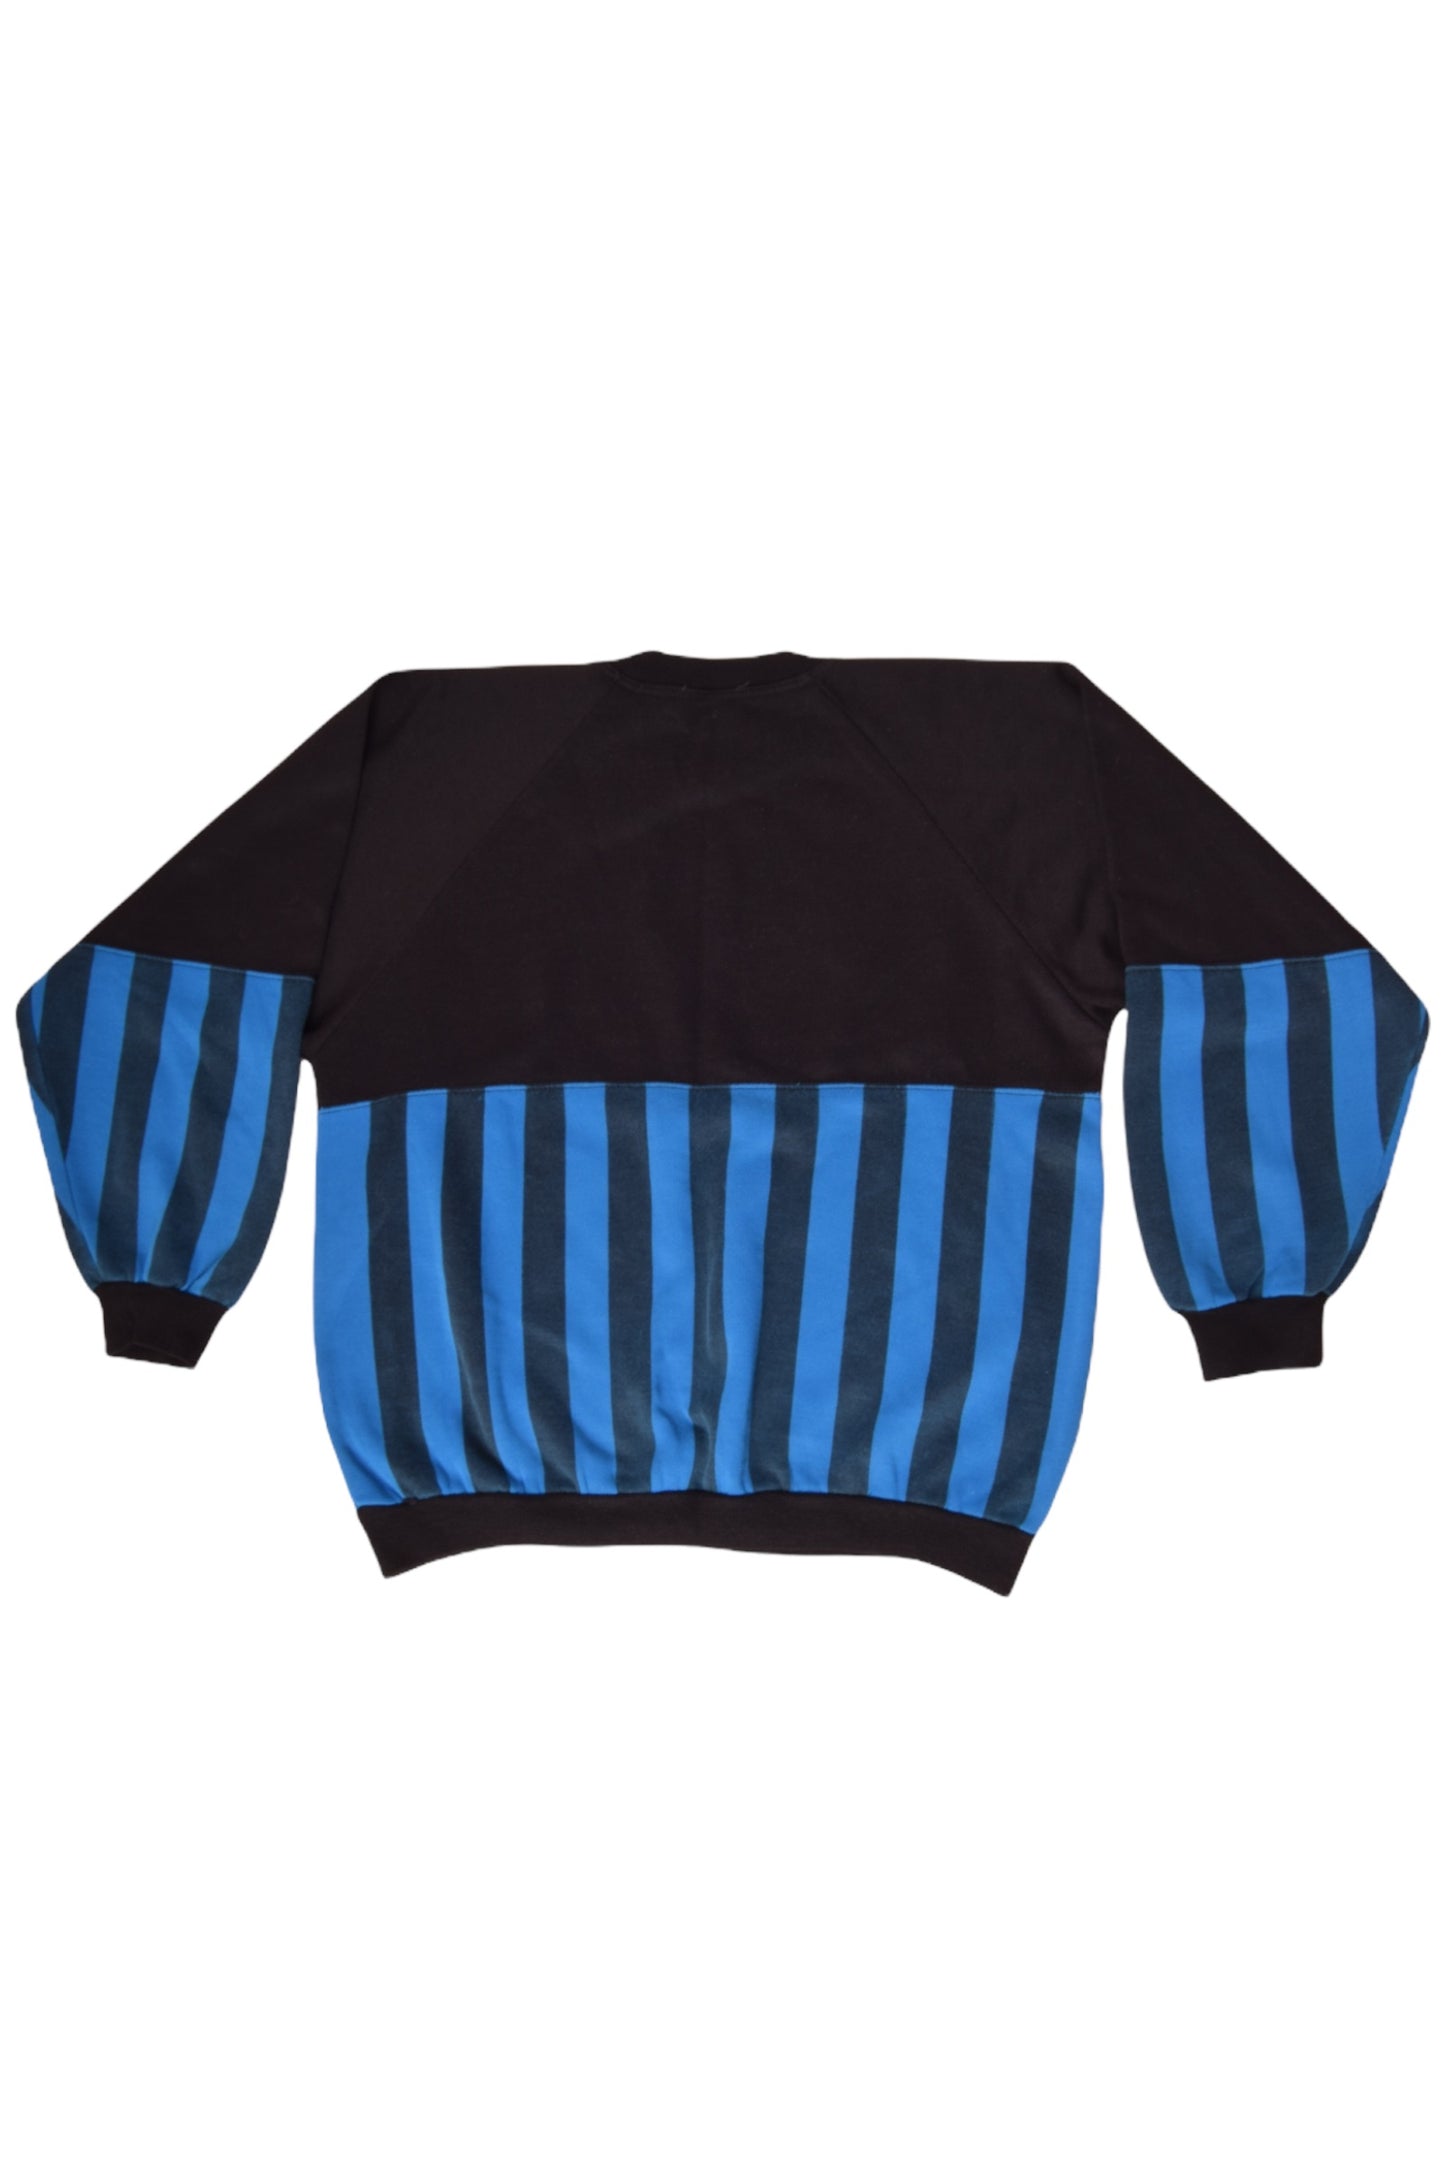 Vintage Inter Milano Le Felpe Dei Grande Club Del Calcio Italiano Parmalat 1991 Sweatshirt Crew Neck  Made in Italy Size M Blue Black